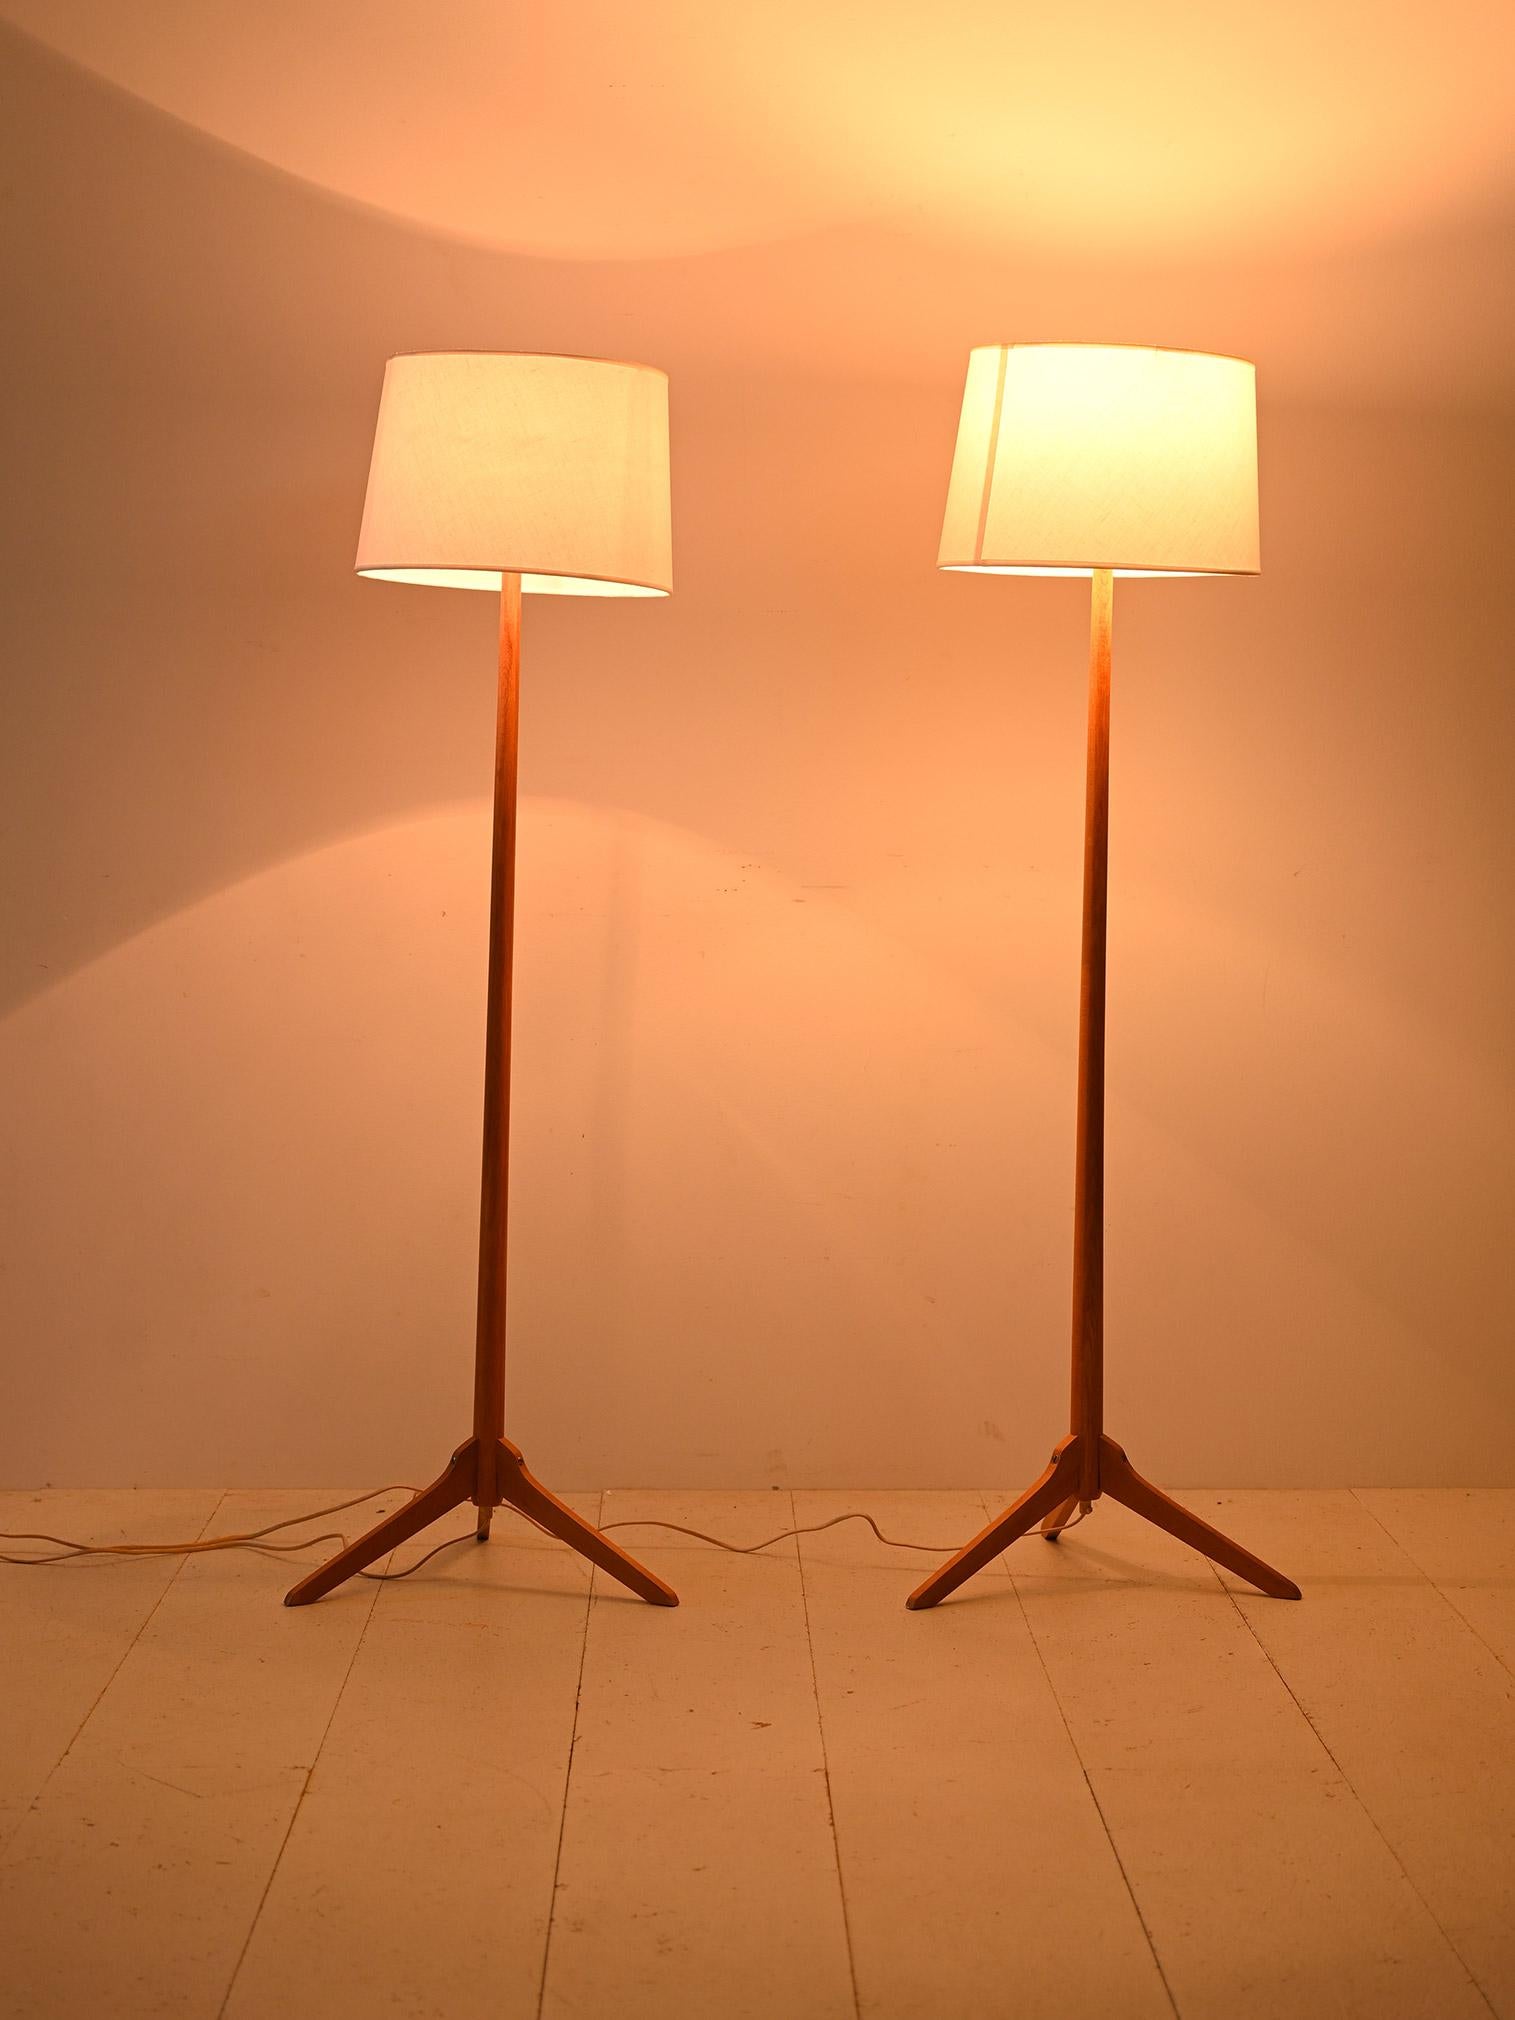 Cette charmante paire de lampadaires représente l'élégance et la simplicité du design nordique. Le cadre en chêne avec des pieds en forme de V ajoute une touche d'originalité et de sophistication, tandis que l'abat-jour en tissu blanc confère une